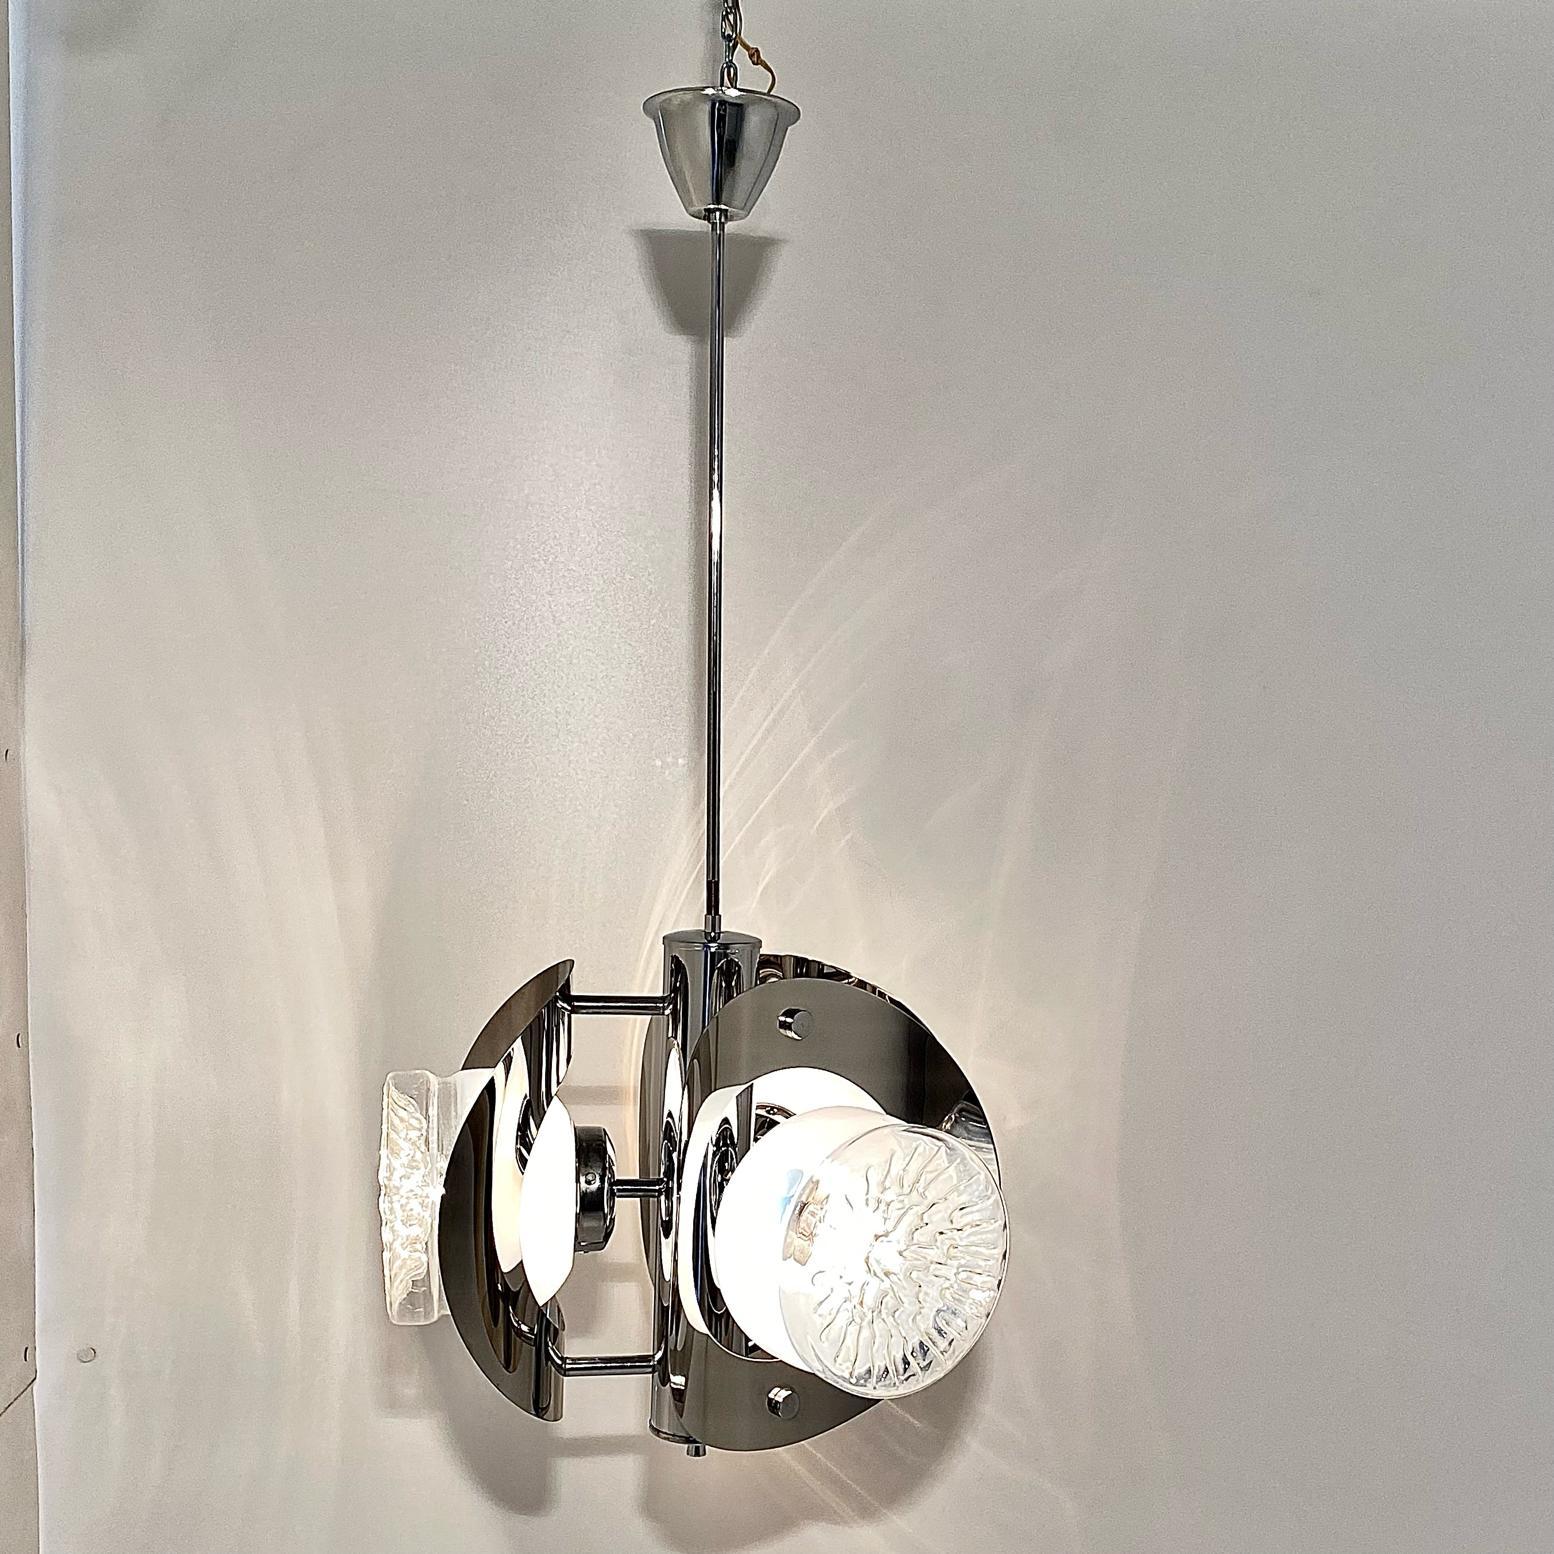 Un chadelier chromé de l'ère spatiale des années 1970, Carlo Nason pour Mazzega. Fabriqué en Italie par Mazzega ltd et conçu par Carlo Nason. Structure en acier chromé avec trois spots lumineux en verre de Murano. L'objet a été restauré comme suit